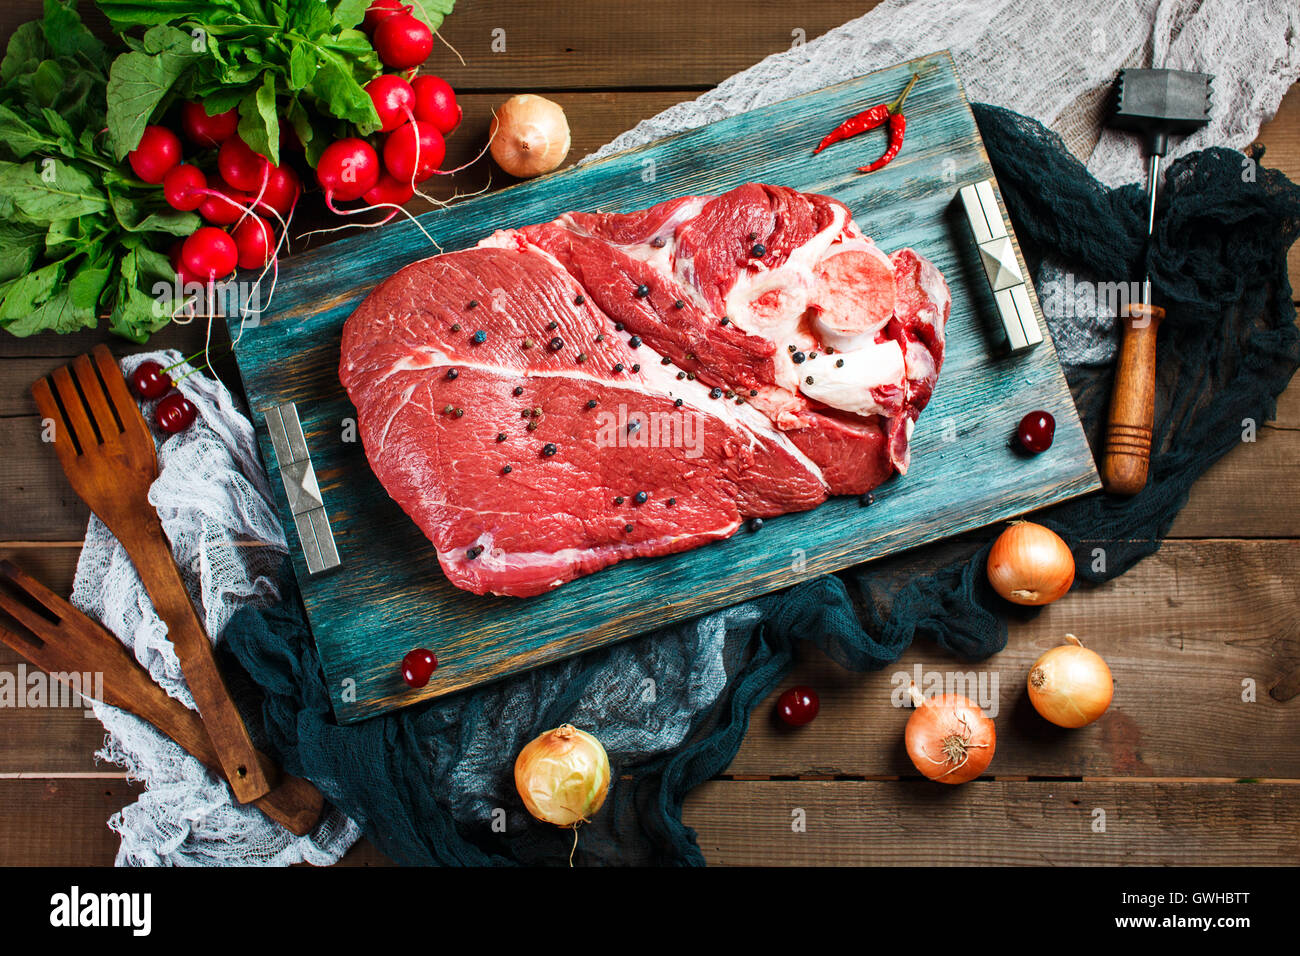 La viande de veau de boeuf frais sur table en bois rustique avec des ustensiles de cuisine et les légumes, vue du dessus Banque D'Images